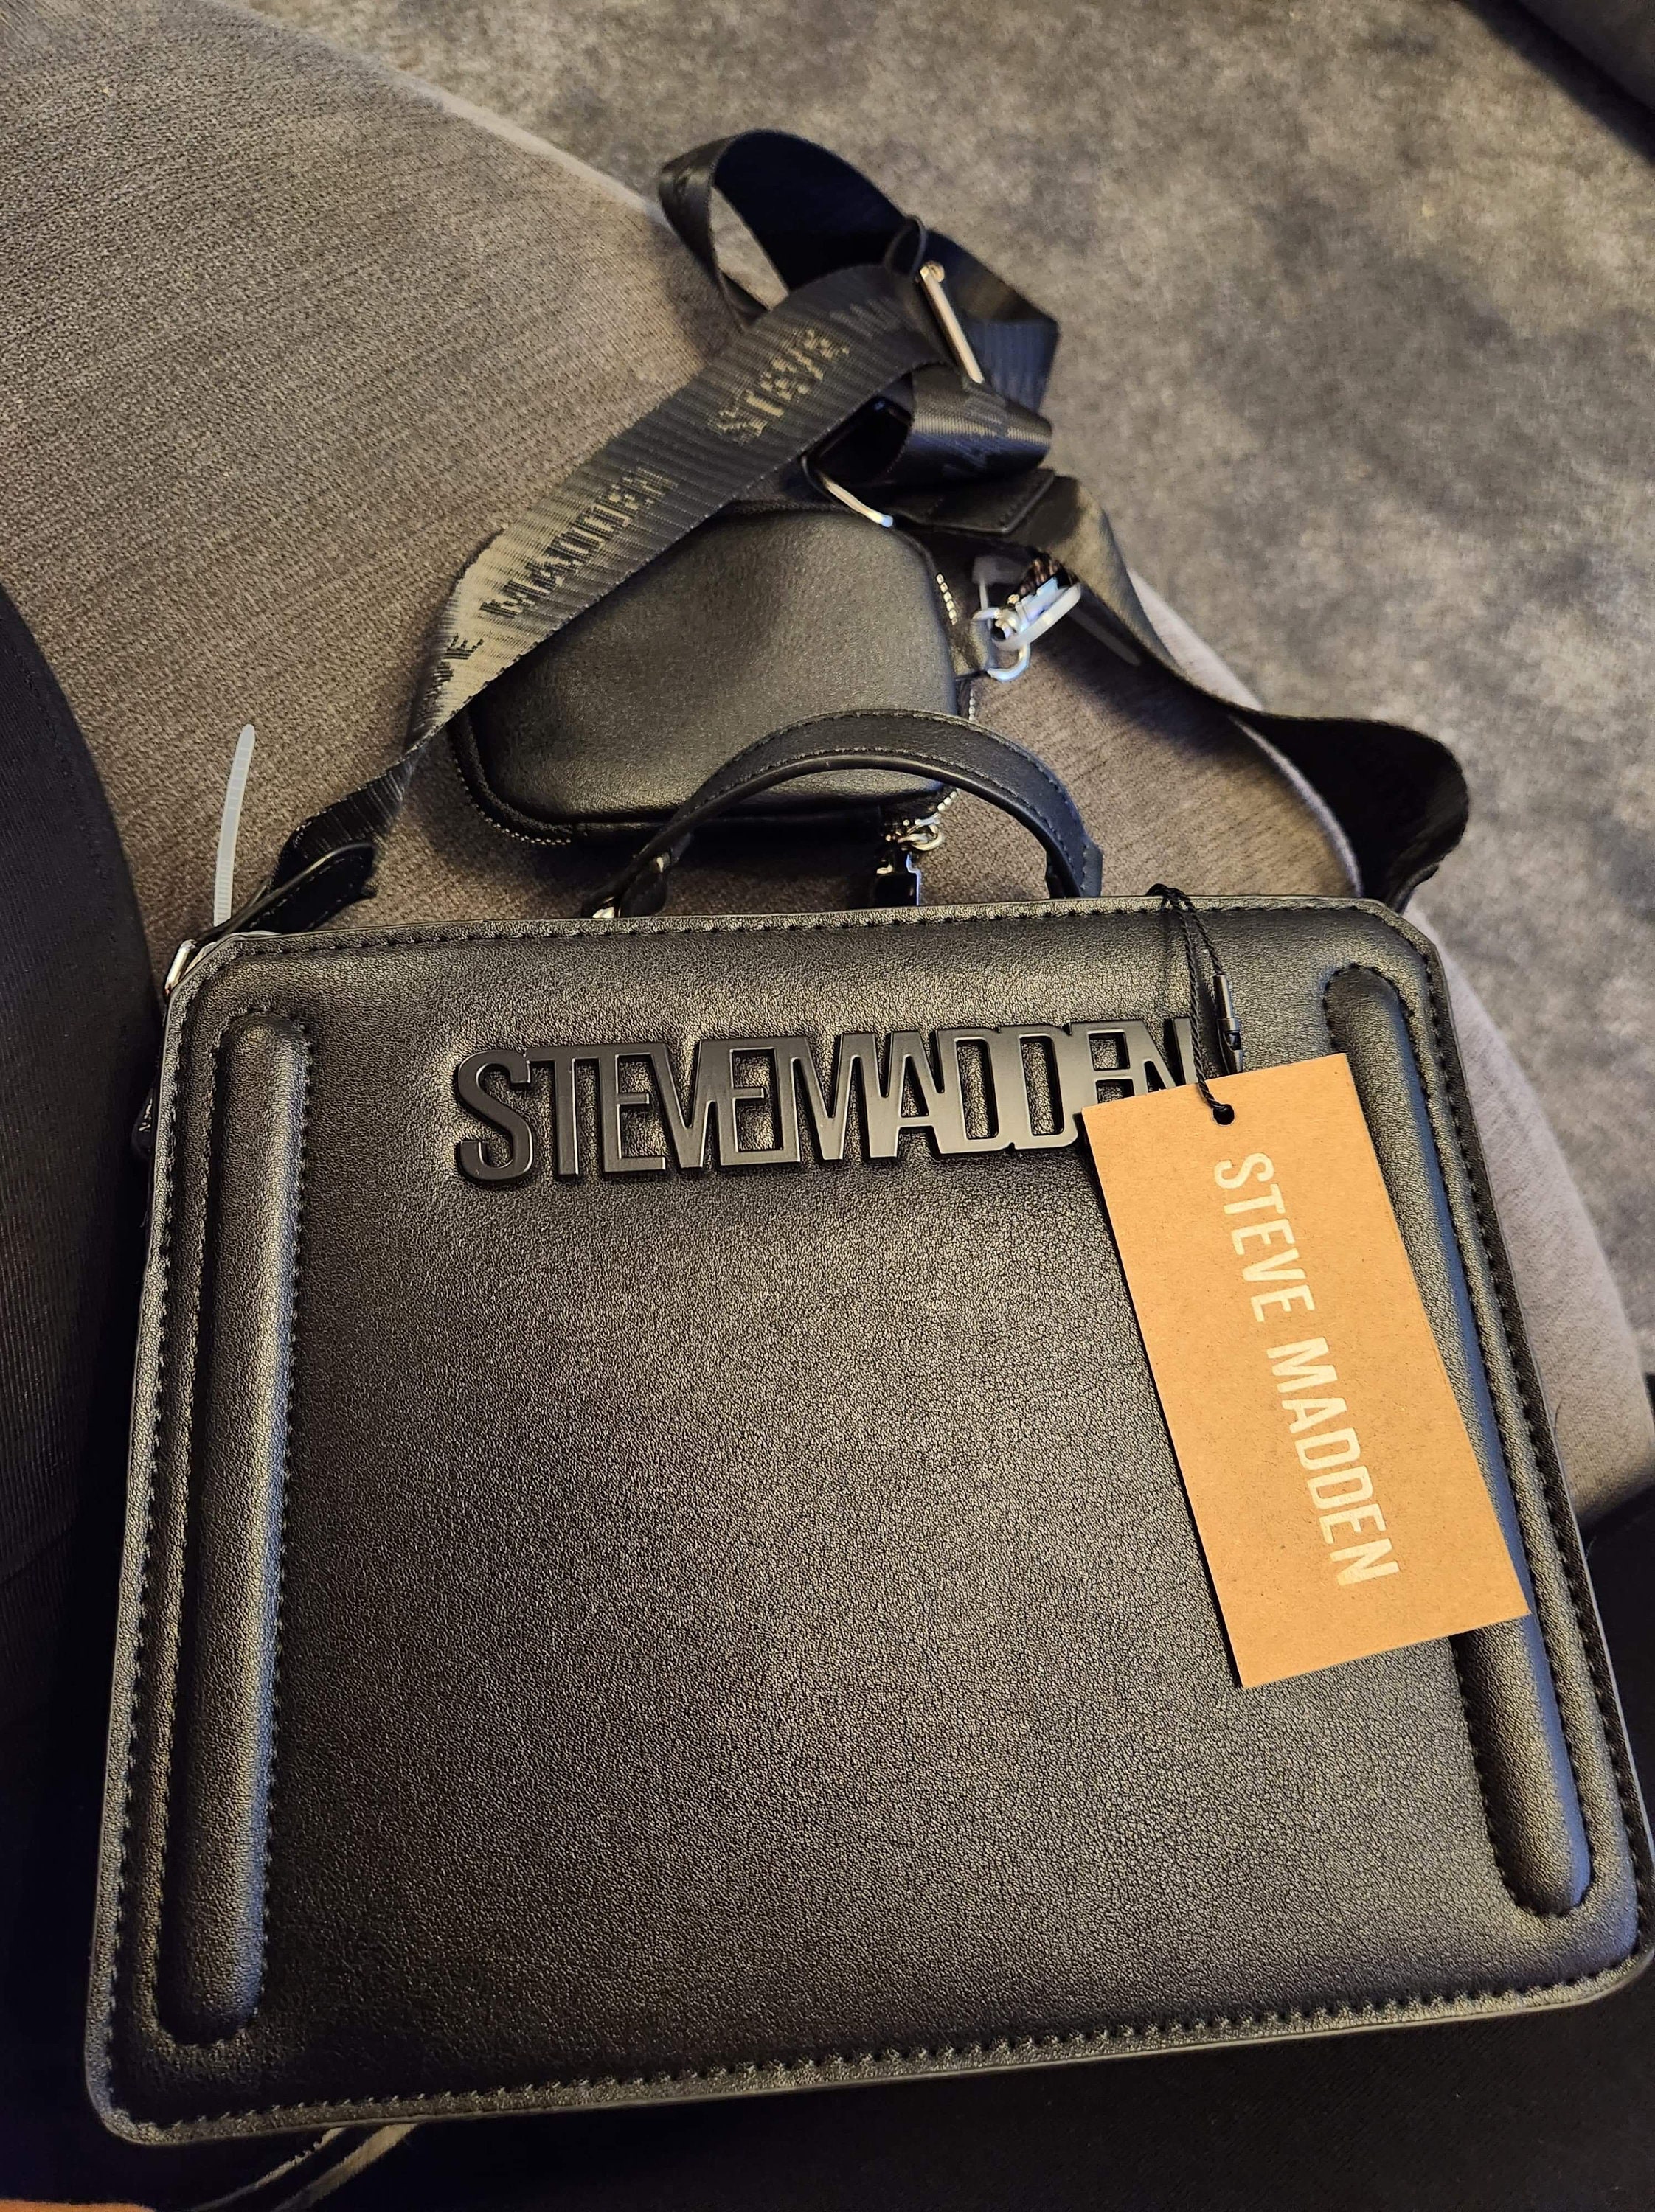 Viral TikTok Steve Madden bevelyn handbag